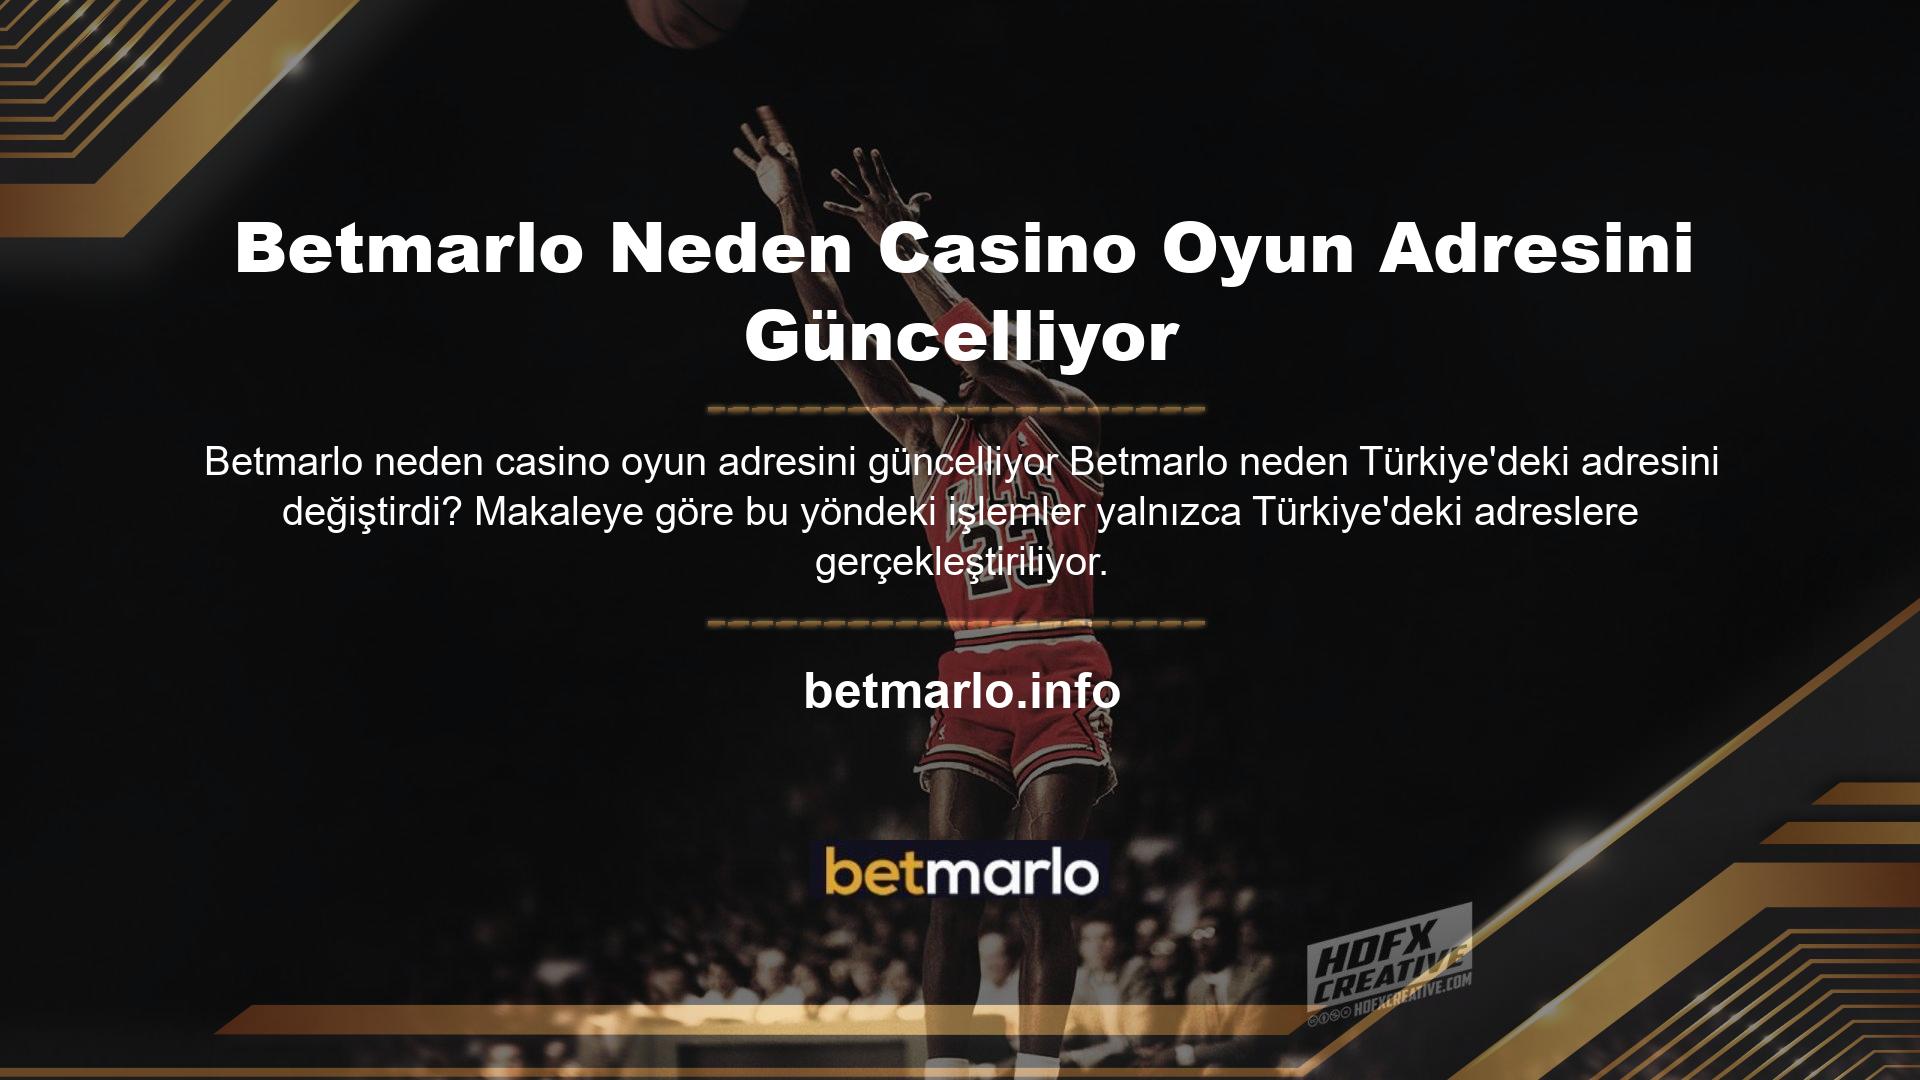 Peki Betmarlo neden casino oyun adresini güncelledi ve neden Türkçe adresini değiştirdi? Bu şirket Türkiye'de kayıtlı değil